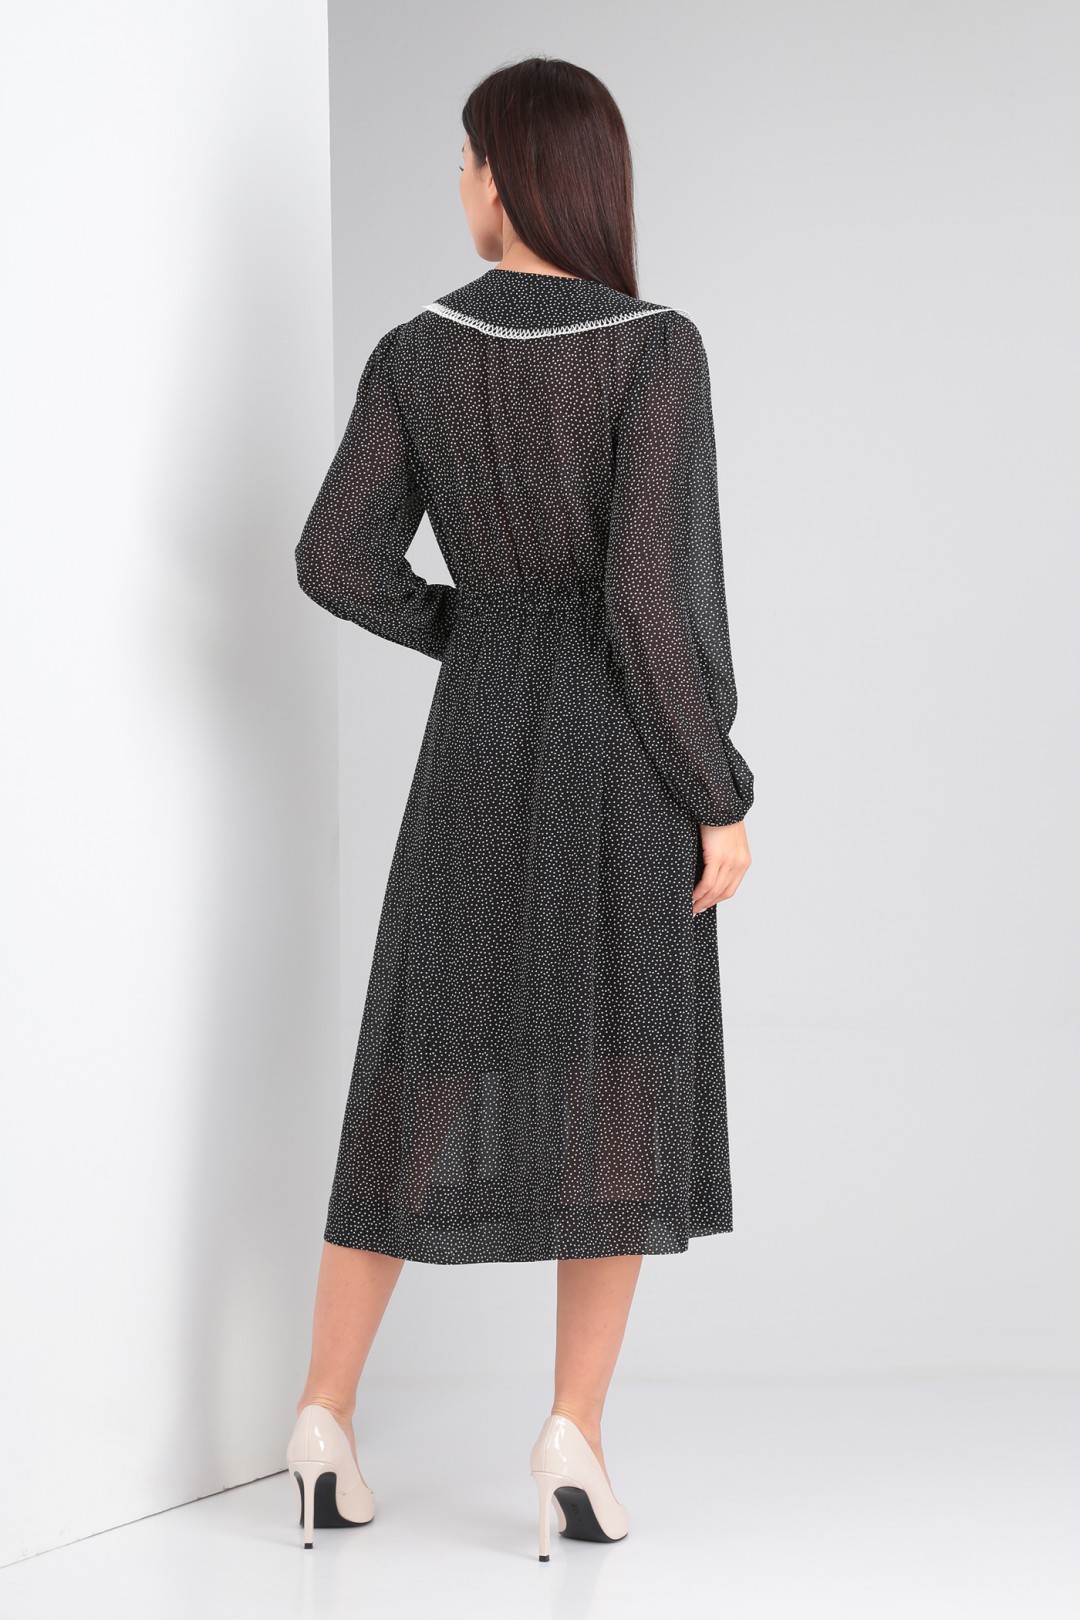 Платье Viola Style 0996 черный в горошек